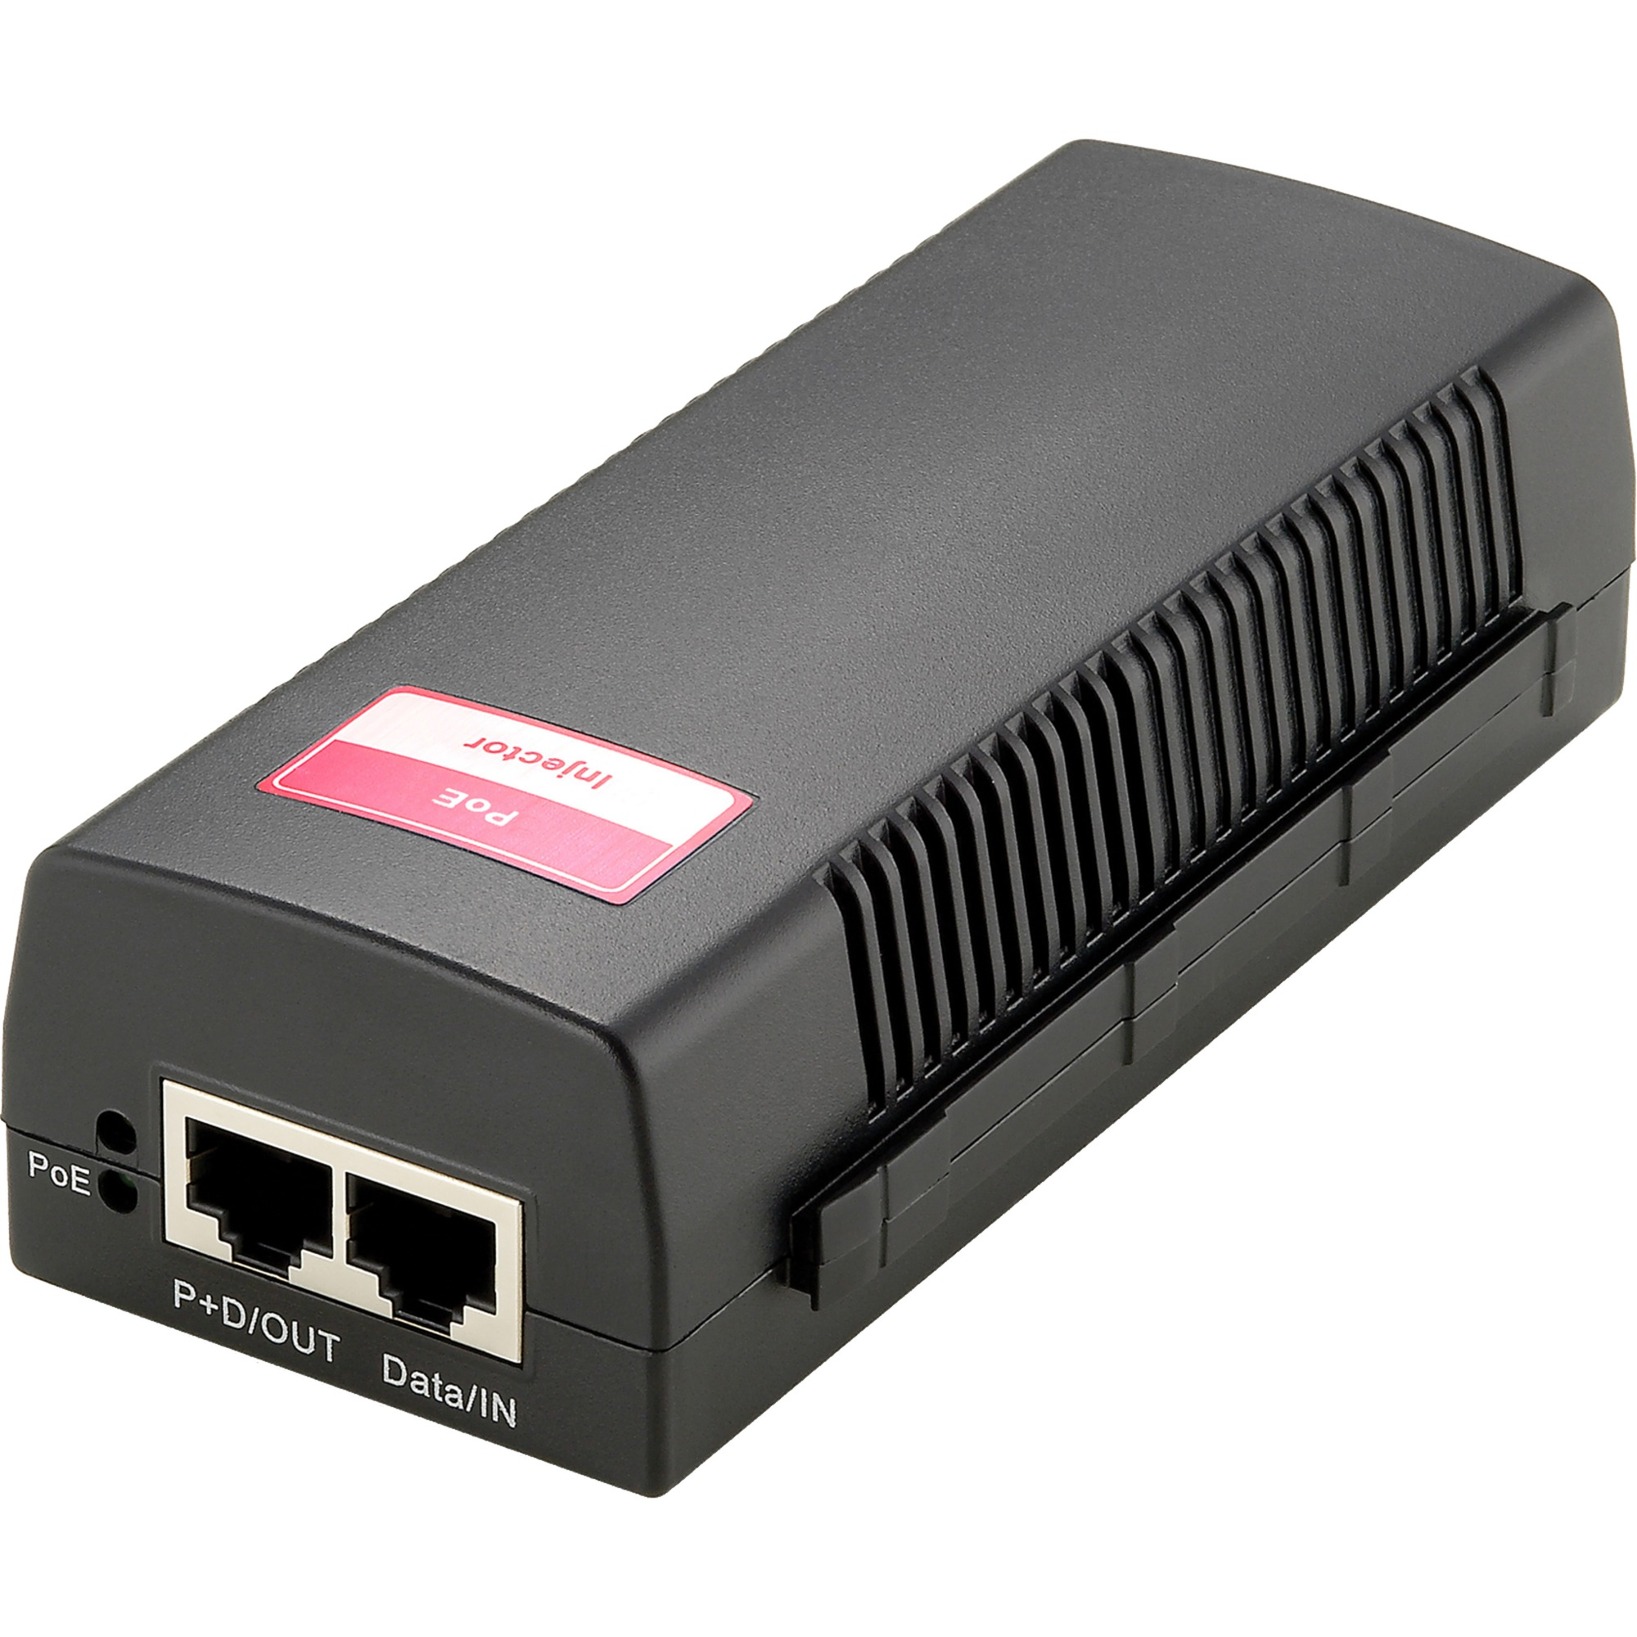 POI-3002 Fast Ethernet 52 V